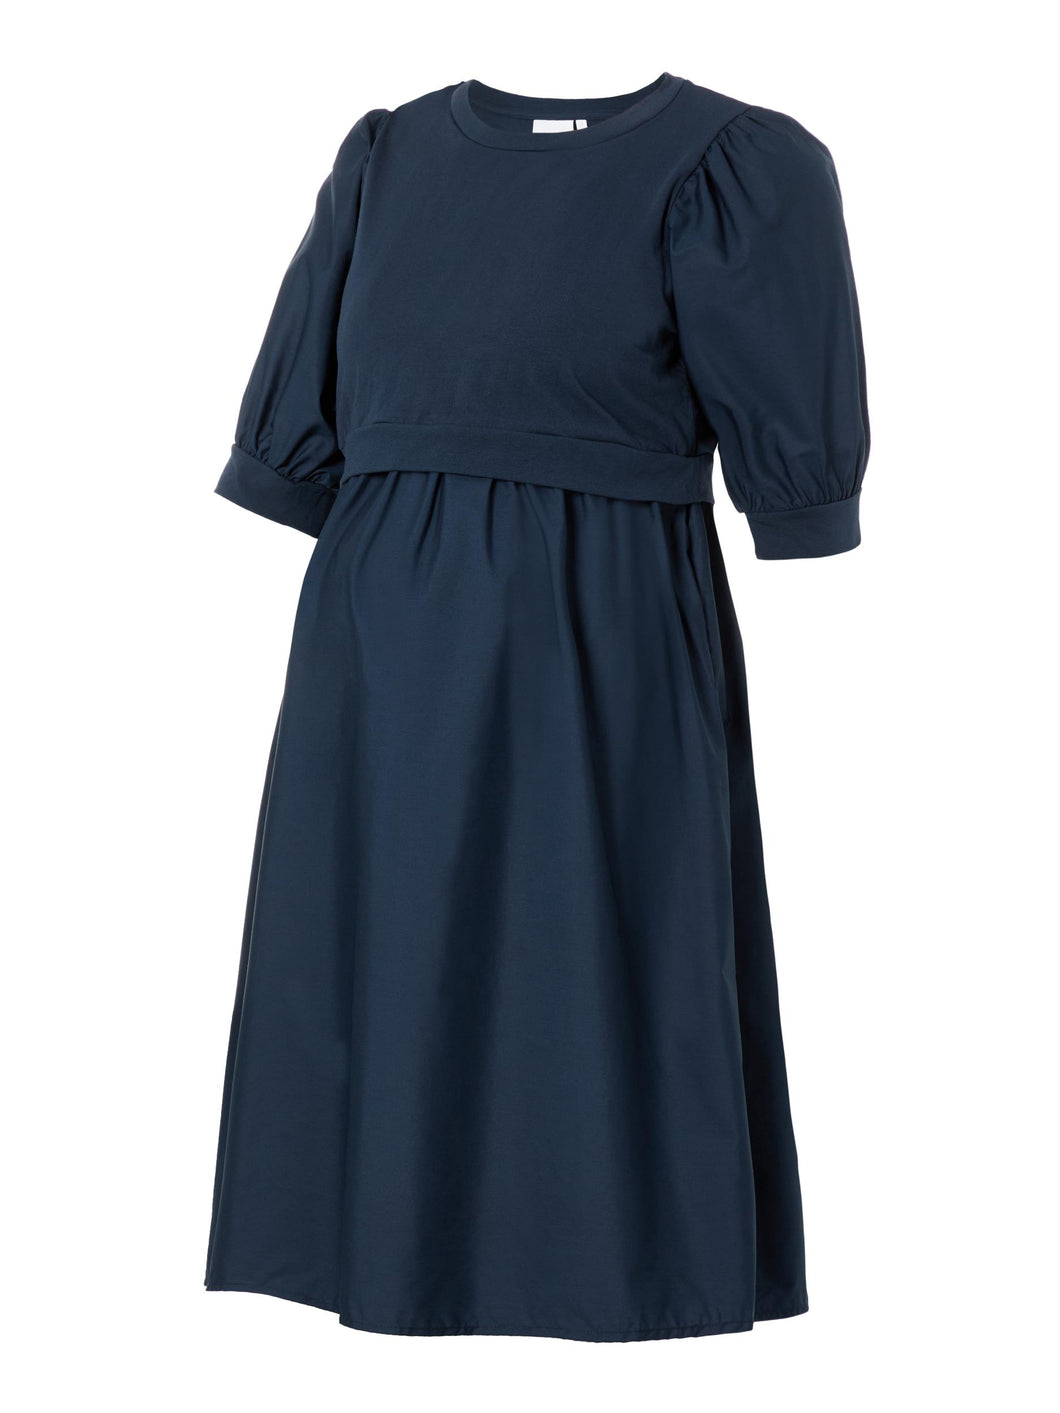 Mutterkleid Stillkleid und Umstandskleid von Mamalicious kurzarm Midilänge in navy mieten oder online kaufen